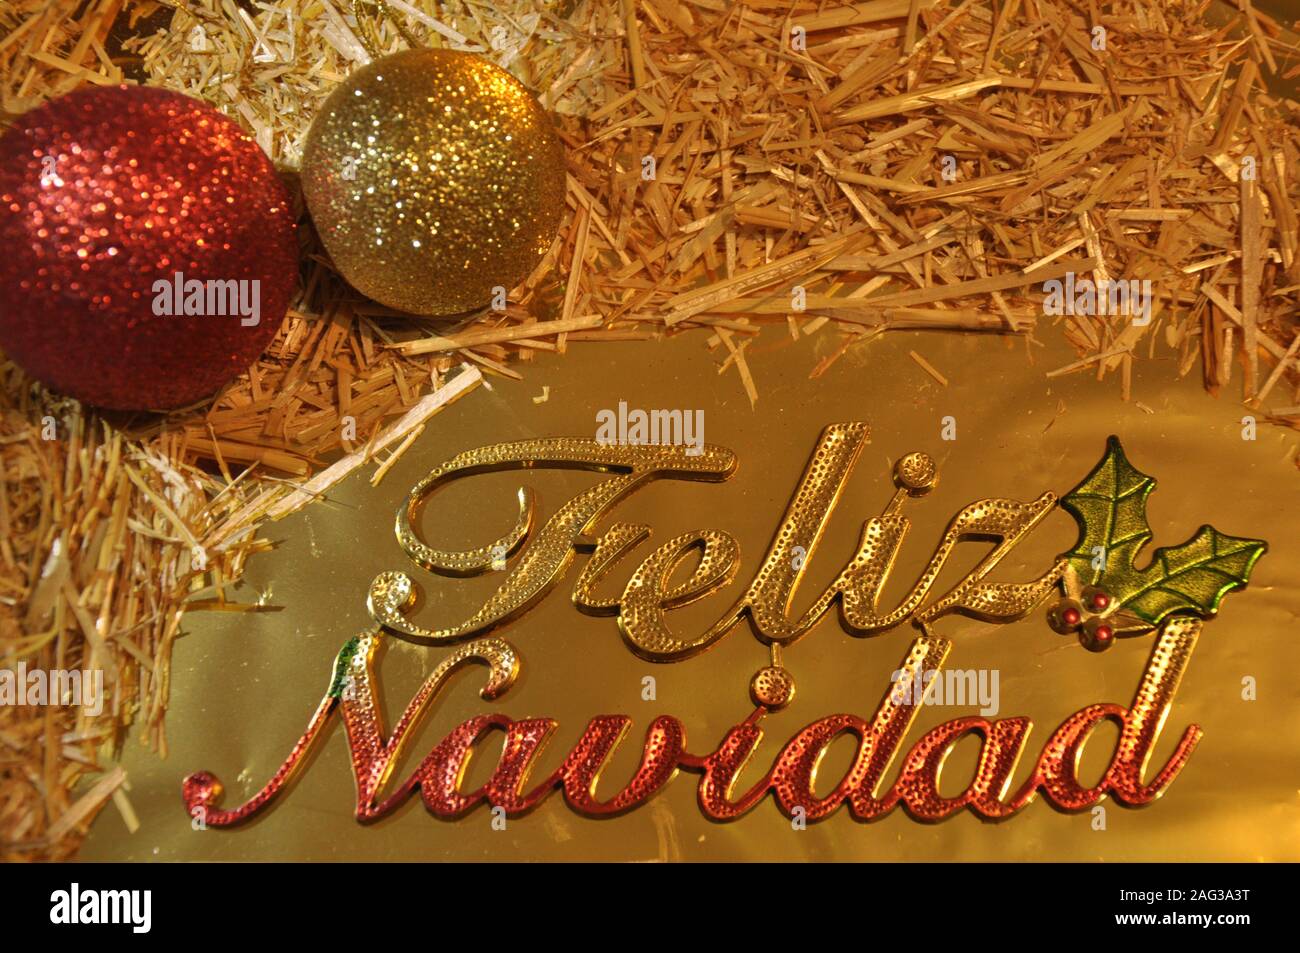 Buon Natale In Latino.Biglietto D Auguri In Spagnolo Immagini E Fotos Stock Alamy